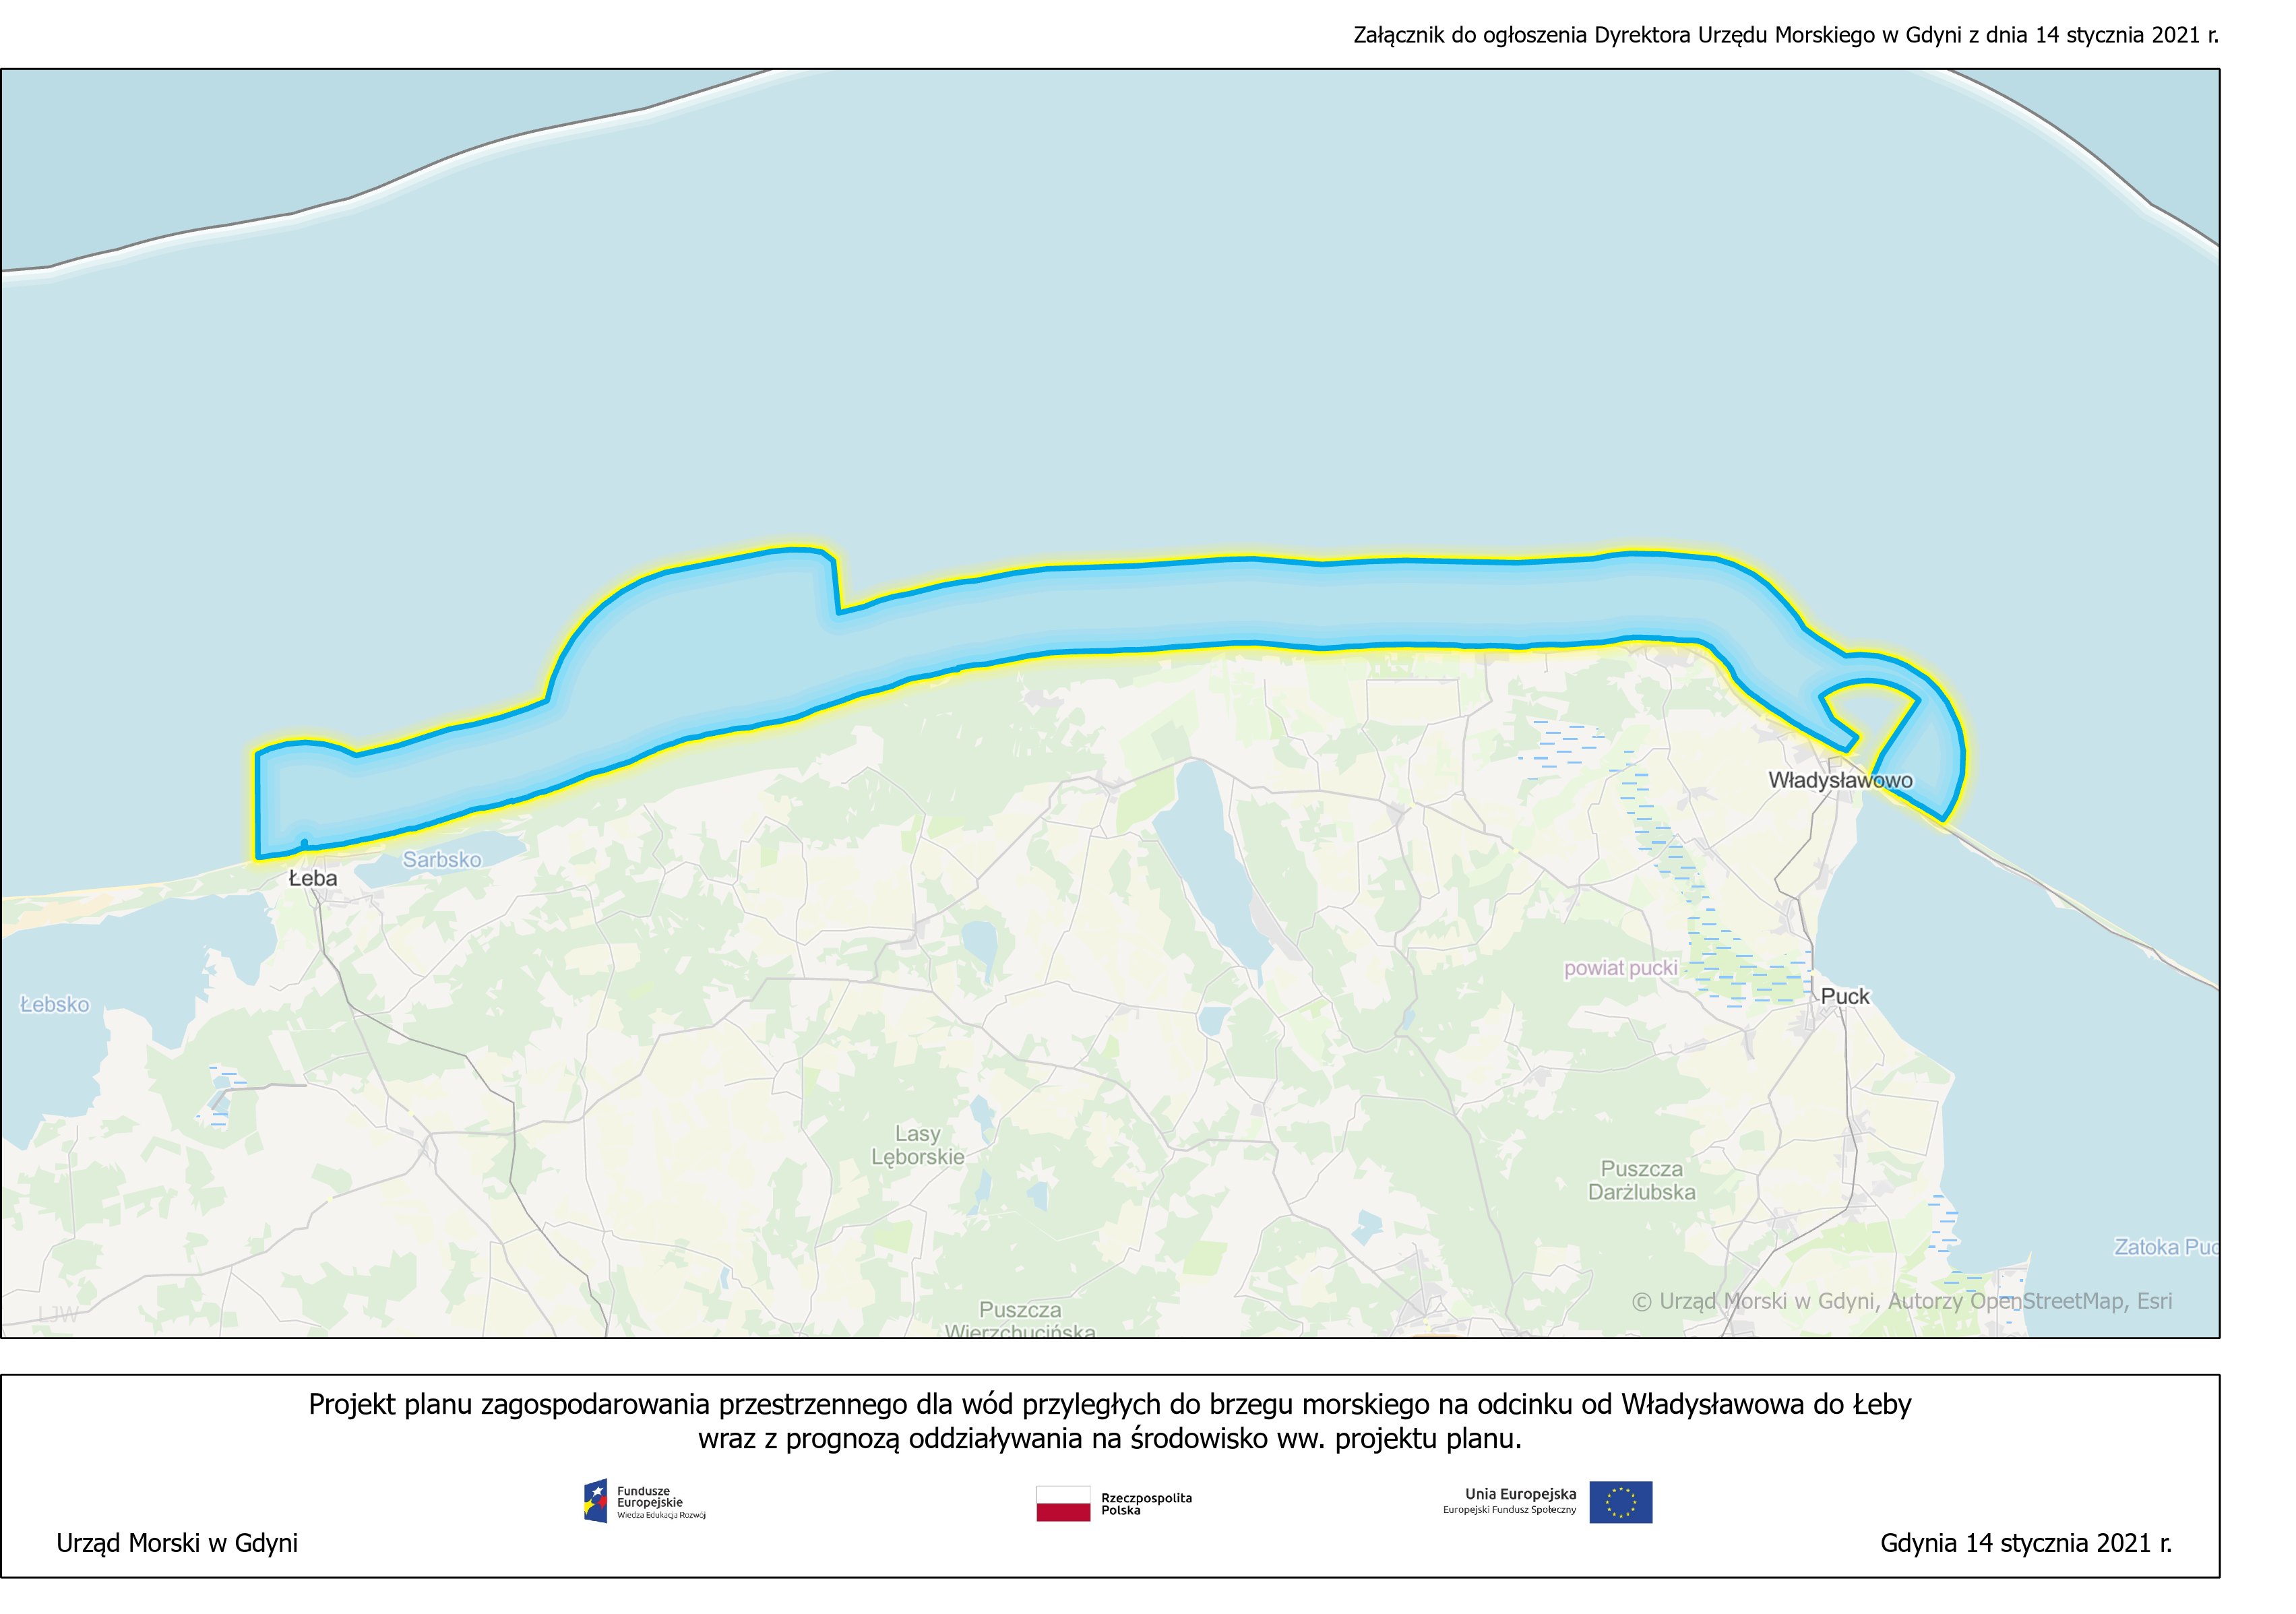 Ogłoszenie o przystąpieniu do sporządzania projektu planu zagospodarowania przestrzennego dla wód przyległych do brzegu morskiego na odcinku od Władysławowa do Łeby